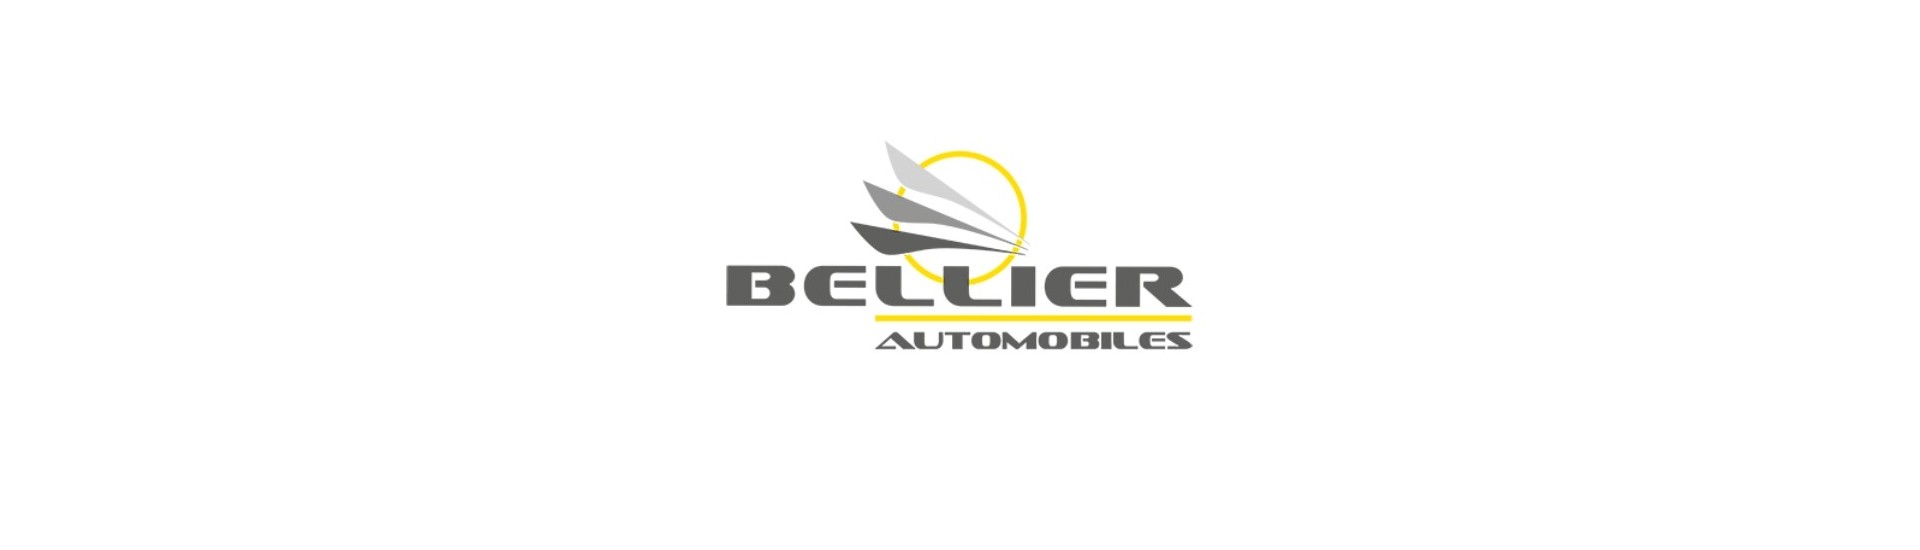 Parada de puerta al mejor precio para coche sin permiso Bellier